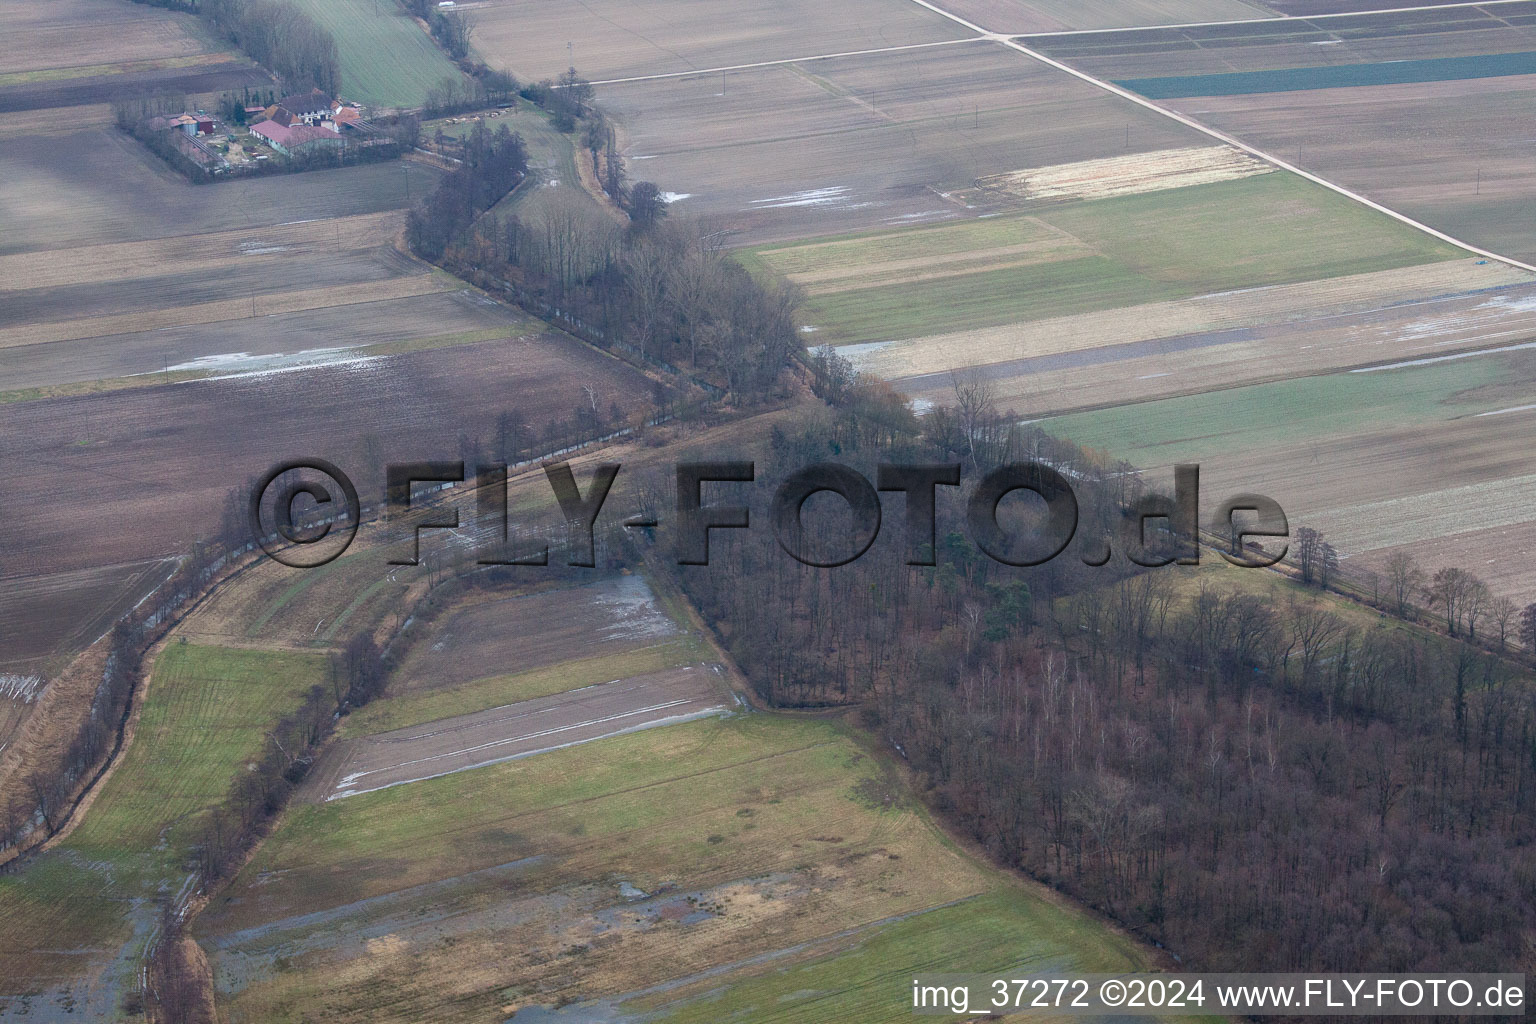 Vue aérienne de Zone de chasse au Leistenmühle à le quartier Minderslachen in Kandel dans le département Rhénanie-Palatinat, Allemagne